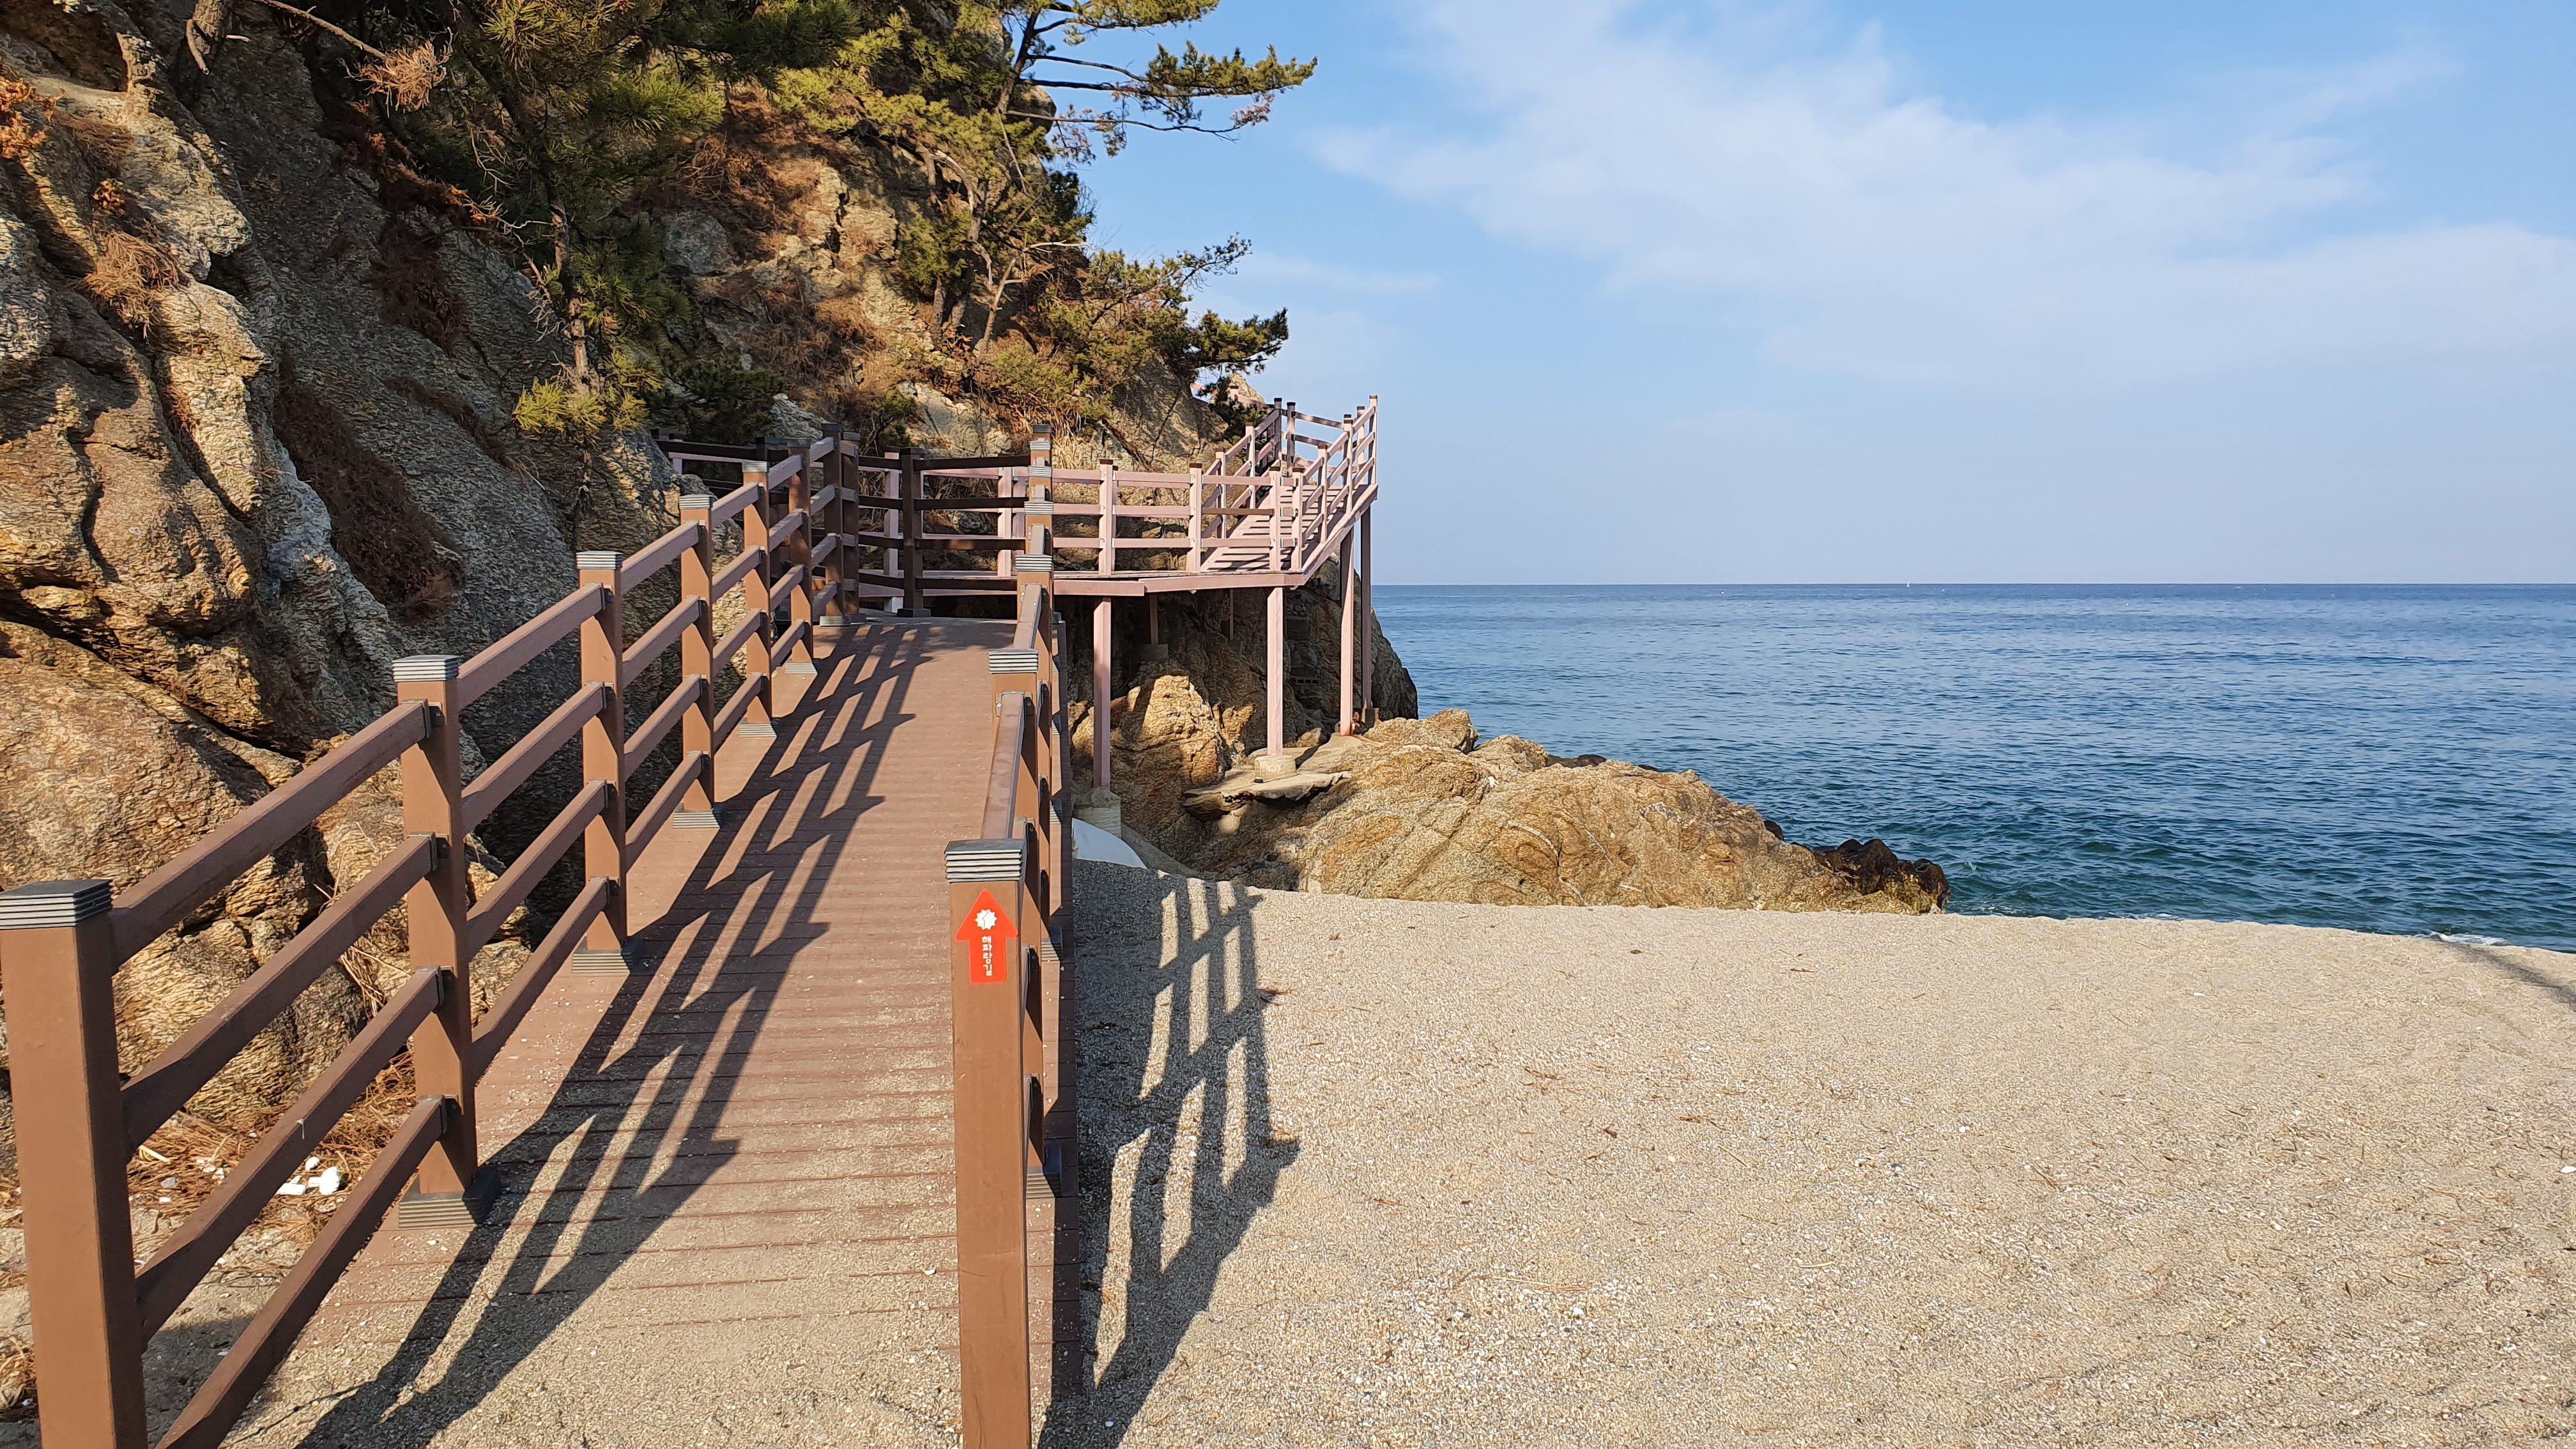 Walkway along cliff by ocean